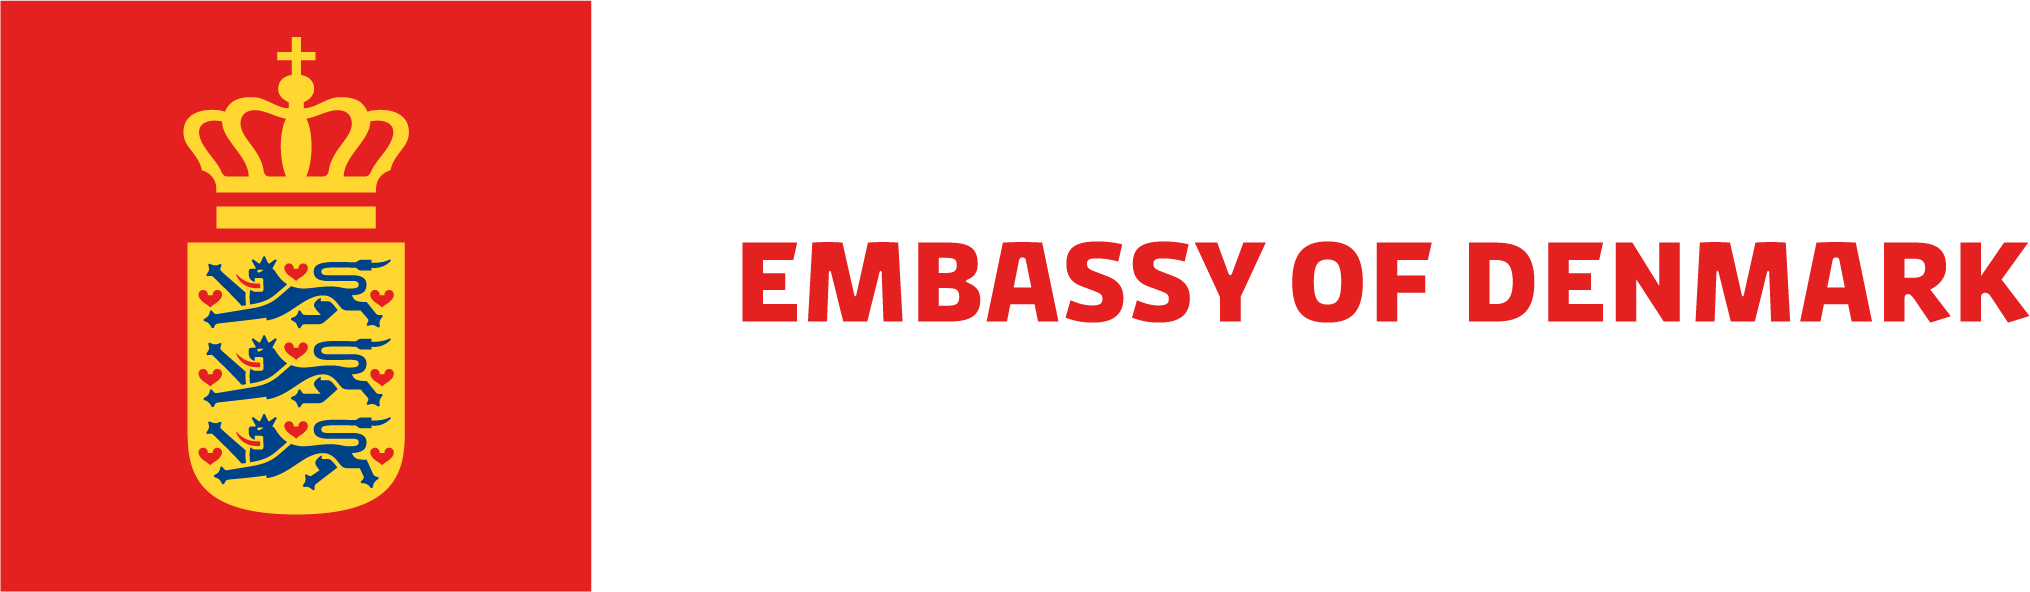 EMBASSY OF DENMARK